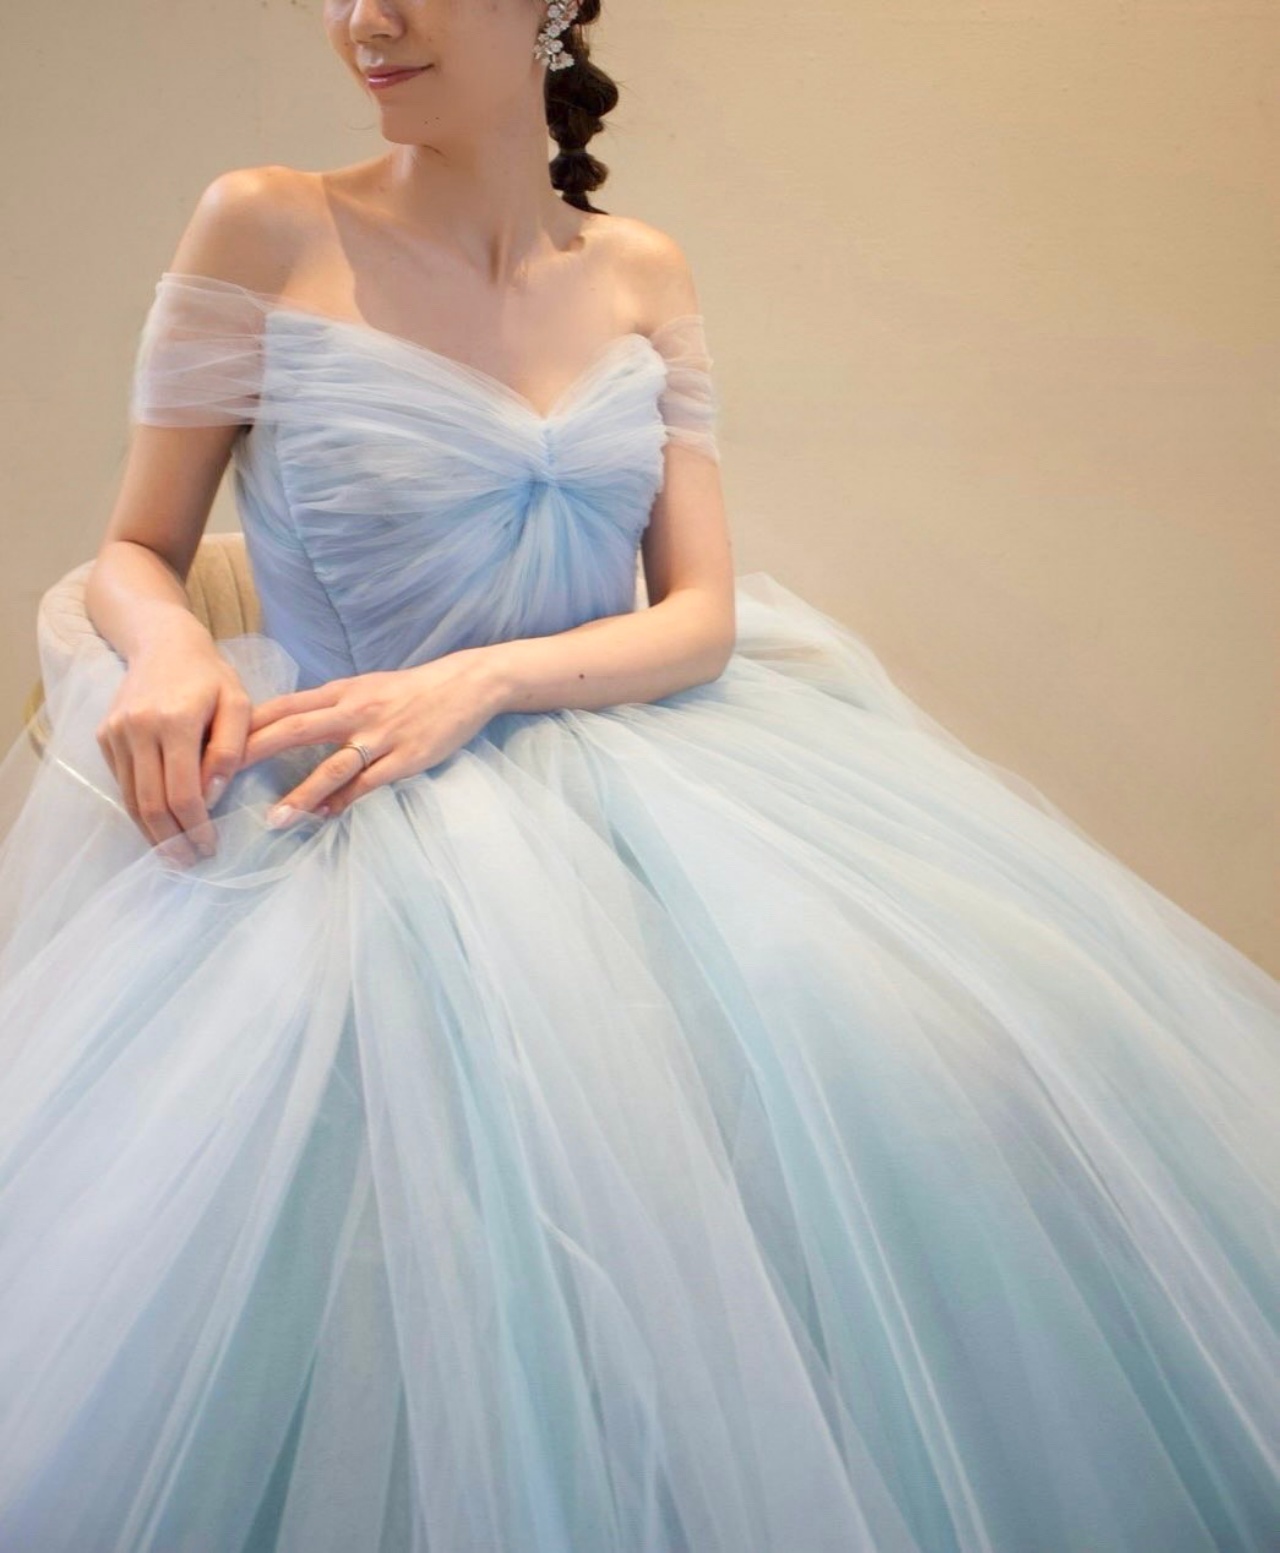 トリート福岡の提携であるウィズ ザ スタイルの結婚式にぴったりのリーム アクラのプリンセスラインのカラードレスは座った姿も立体感あふれるシルエットです